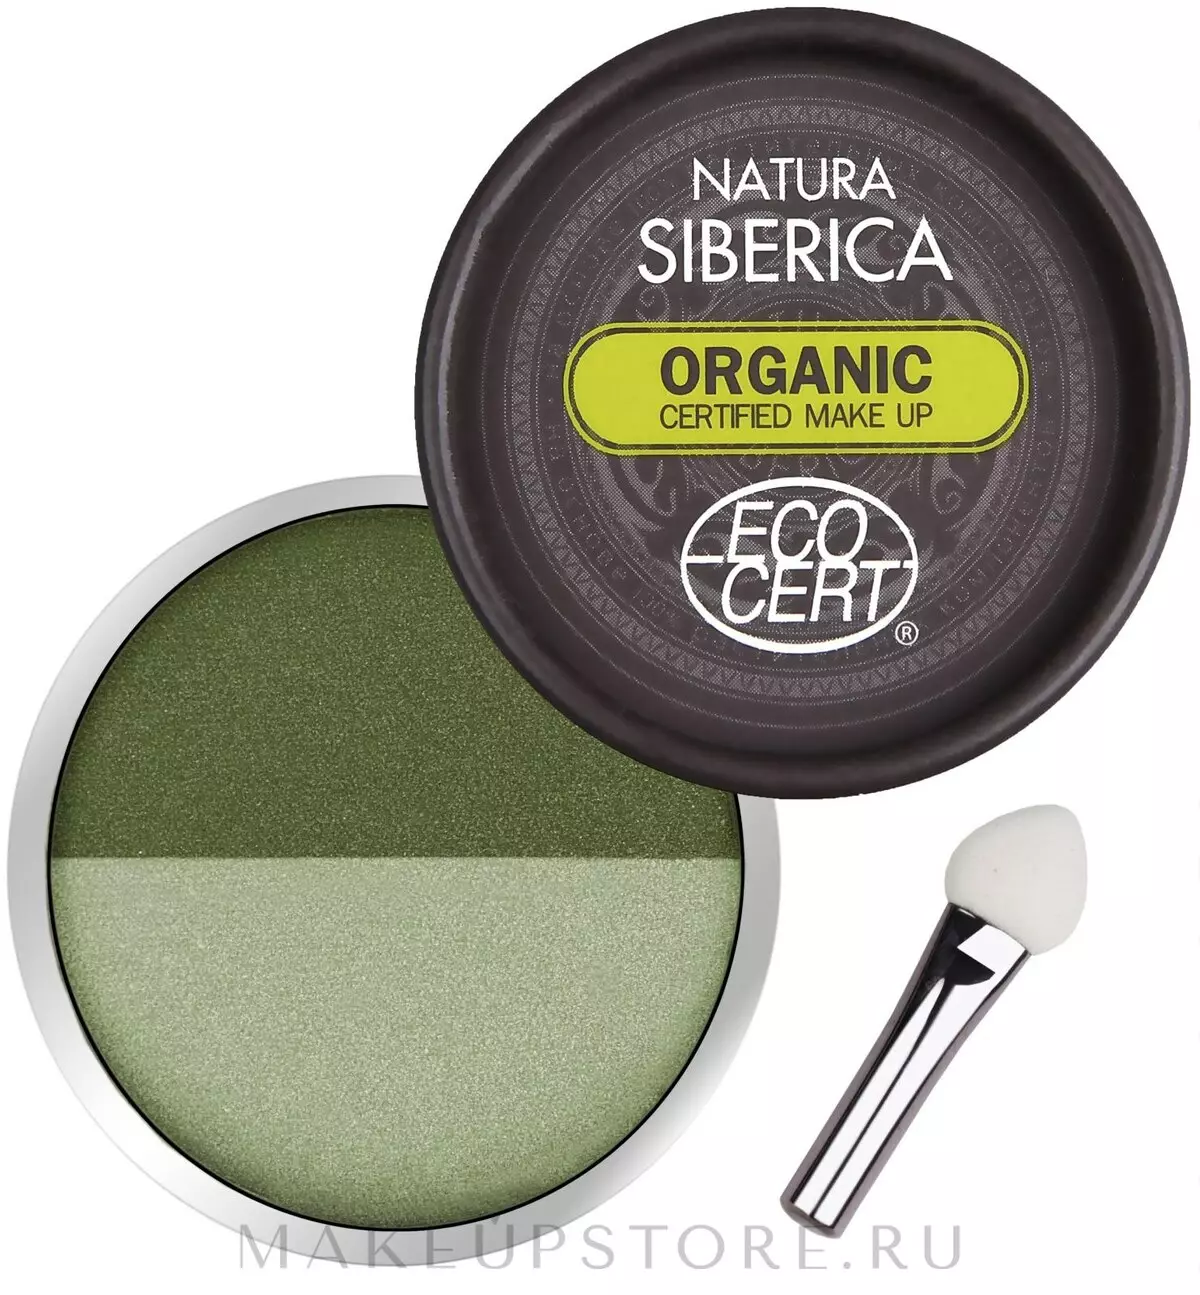 Cosmetics Natura Siberaca: Organicy teuteuga ma faaletonu agavale agavale mai le tagata gaosi oloa. Iloiloga o cosmetologists 4850_17